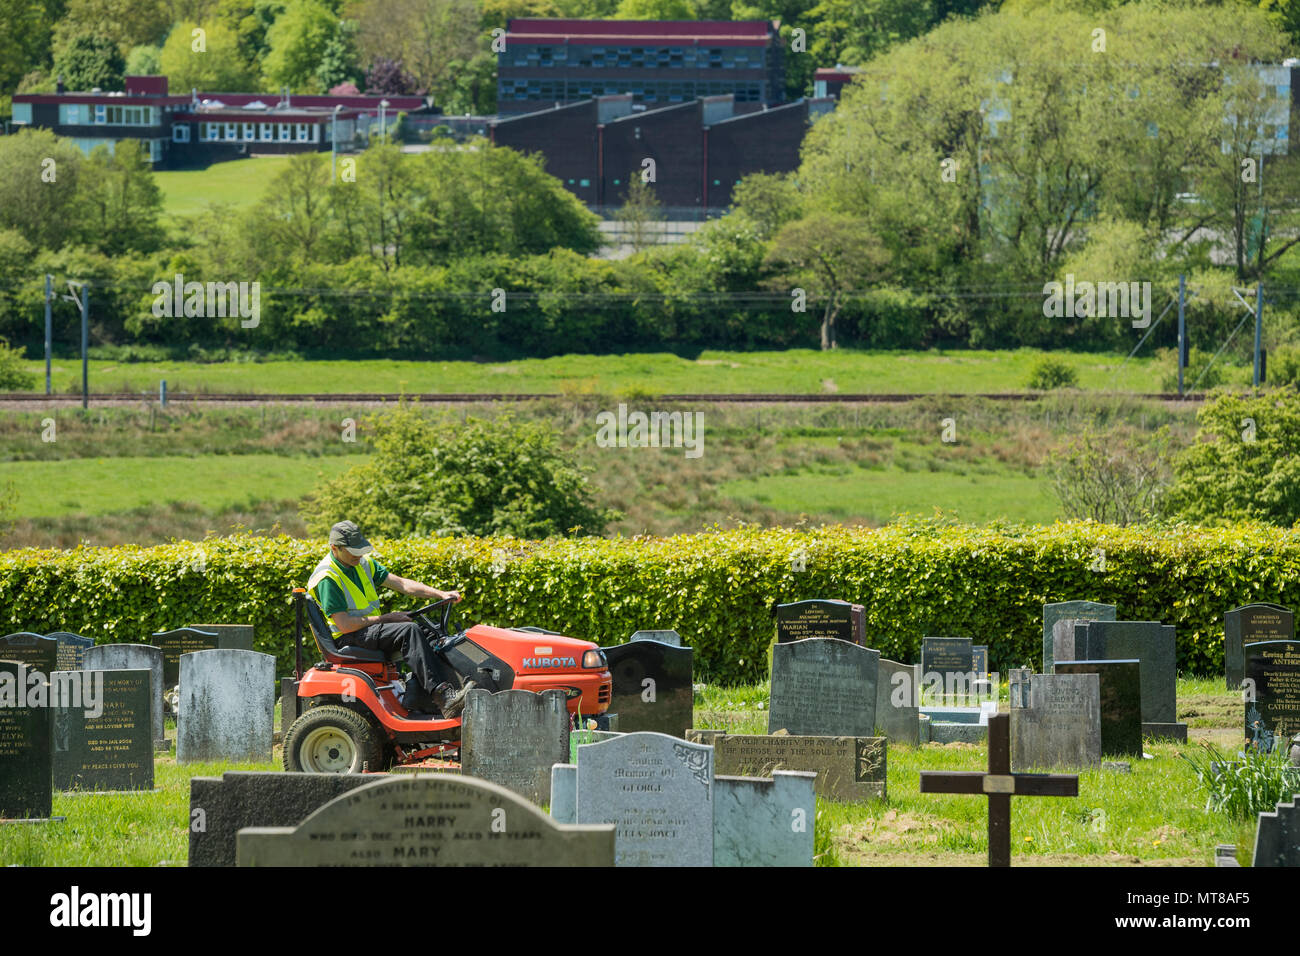 Homme au travail (empoyee de conseil local) siège au tour sur tondeuse et coupe de l'herbe entre les pierres tombales du cimetière - Guiseley, West Yorkshire, Angleterre, Royaume-Uni. Banque D'Images